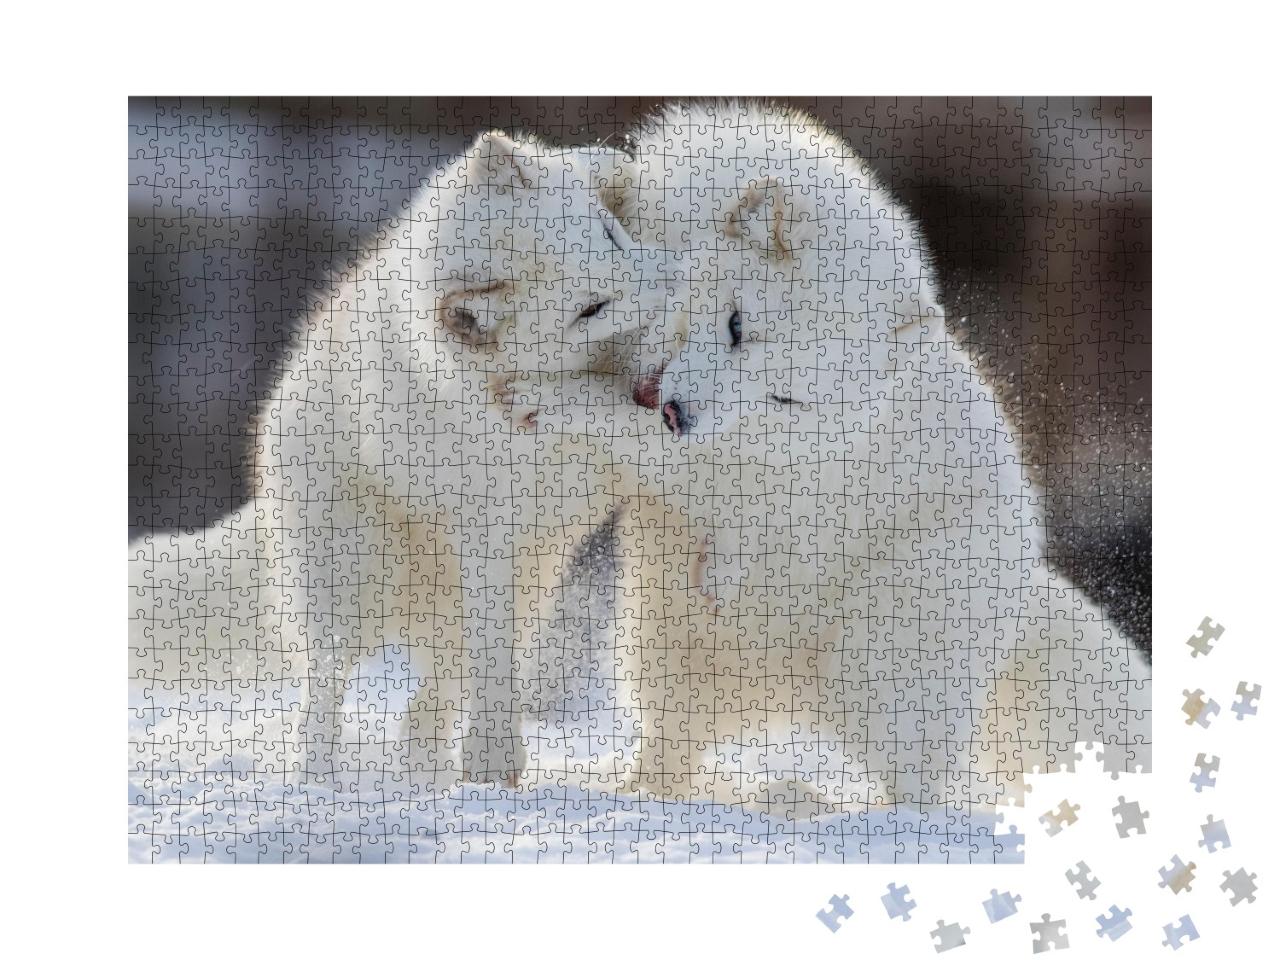 Puzzle de 1000 pièces « Renards polaires au combat »